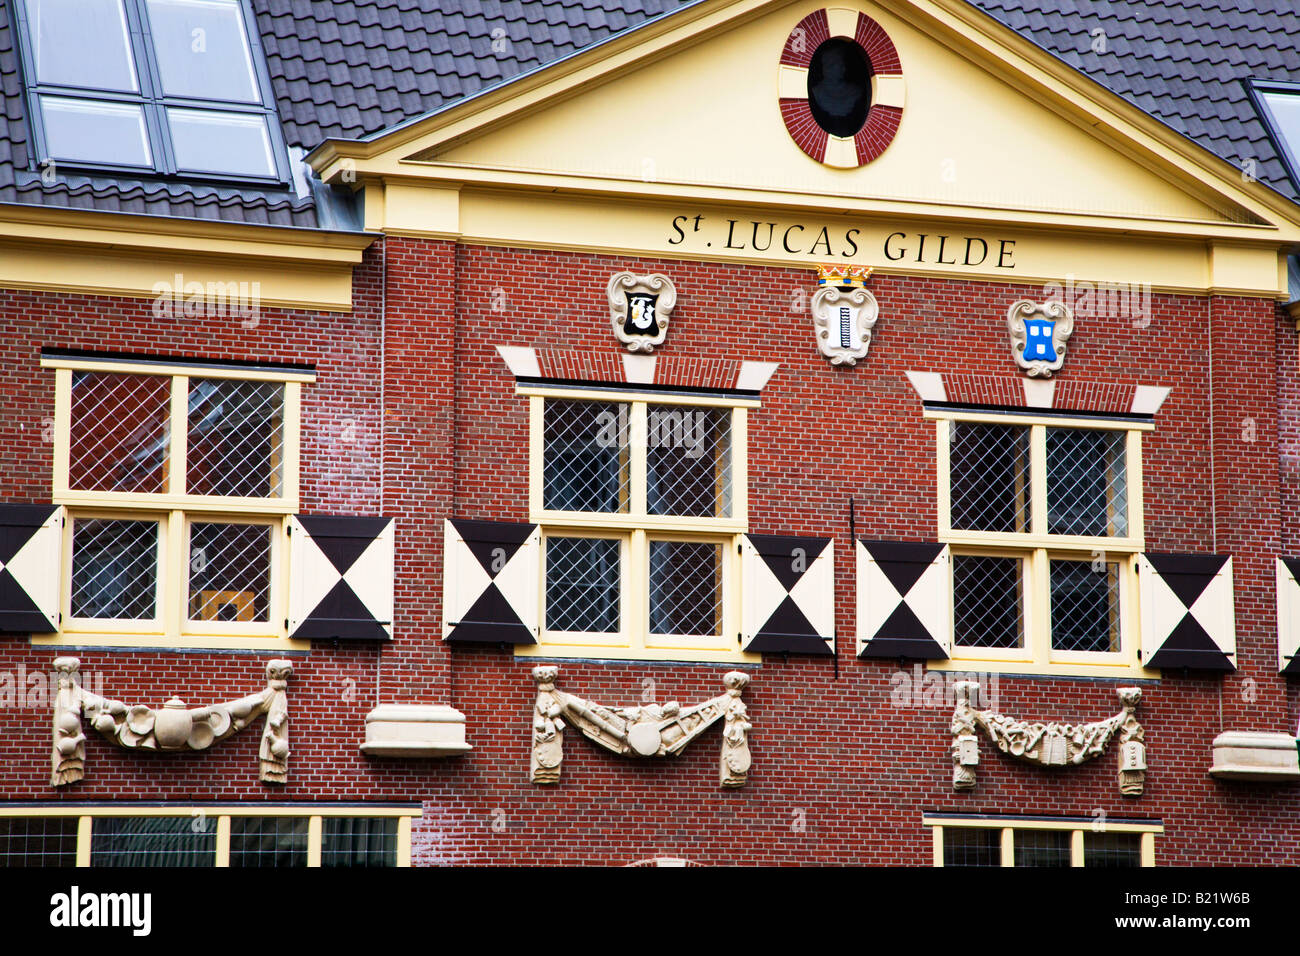 Vermeer Centrum Delft Netherlands Stock Photo